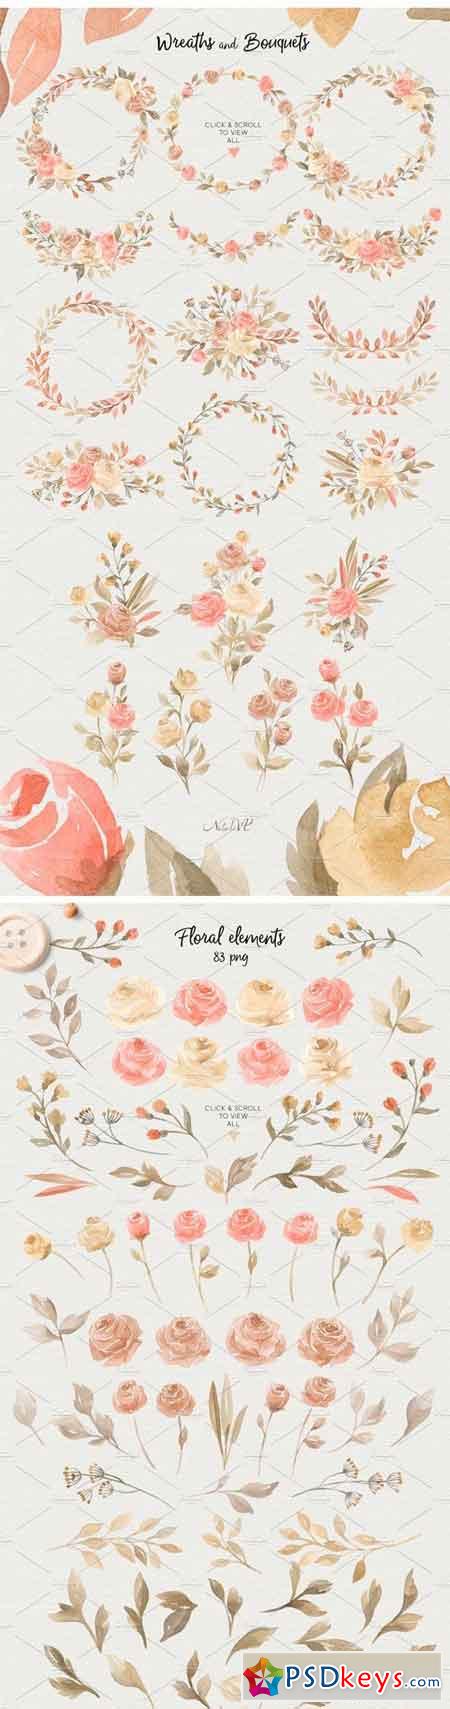 Roses Story. Design Kit Watercolor 1576614